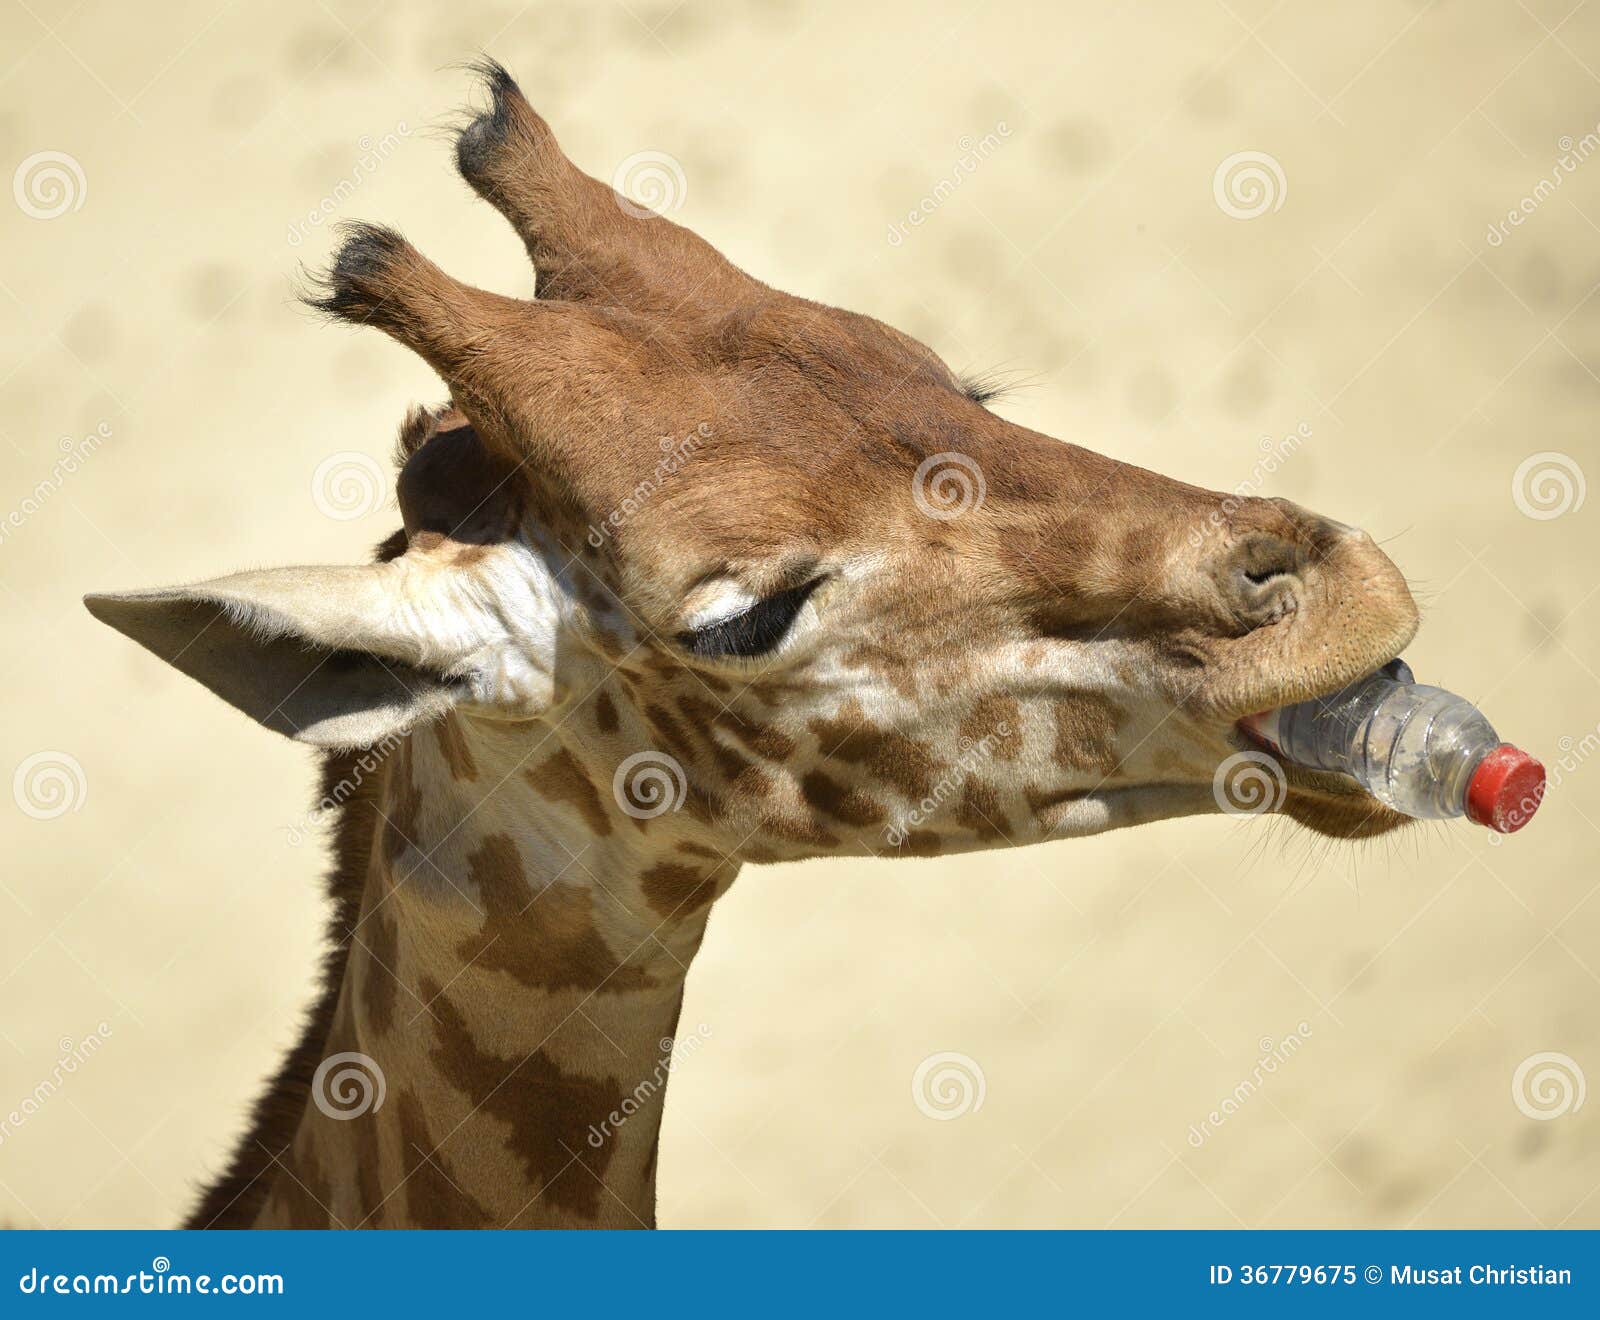 图片素材 : 野生动物, 哺乳动物, 动物群, 长颈鹿, 脊椎动物, giraffidae 2816x1880 - - 89247 - 素材 ...